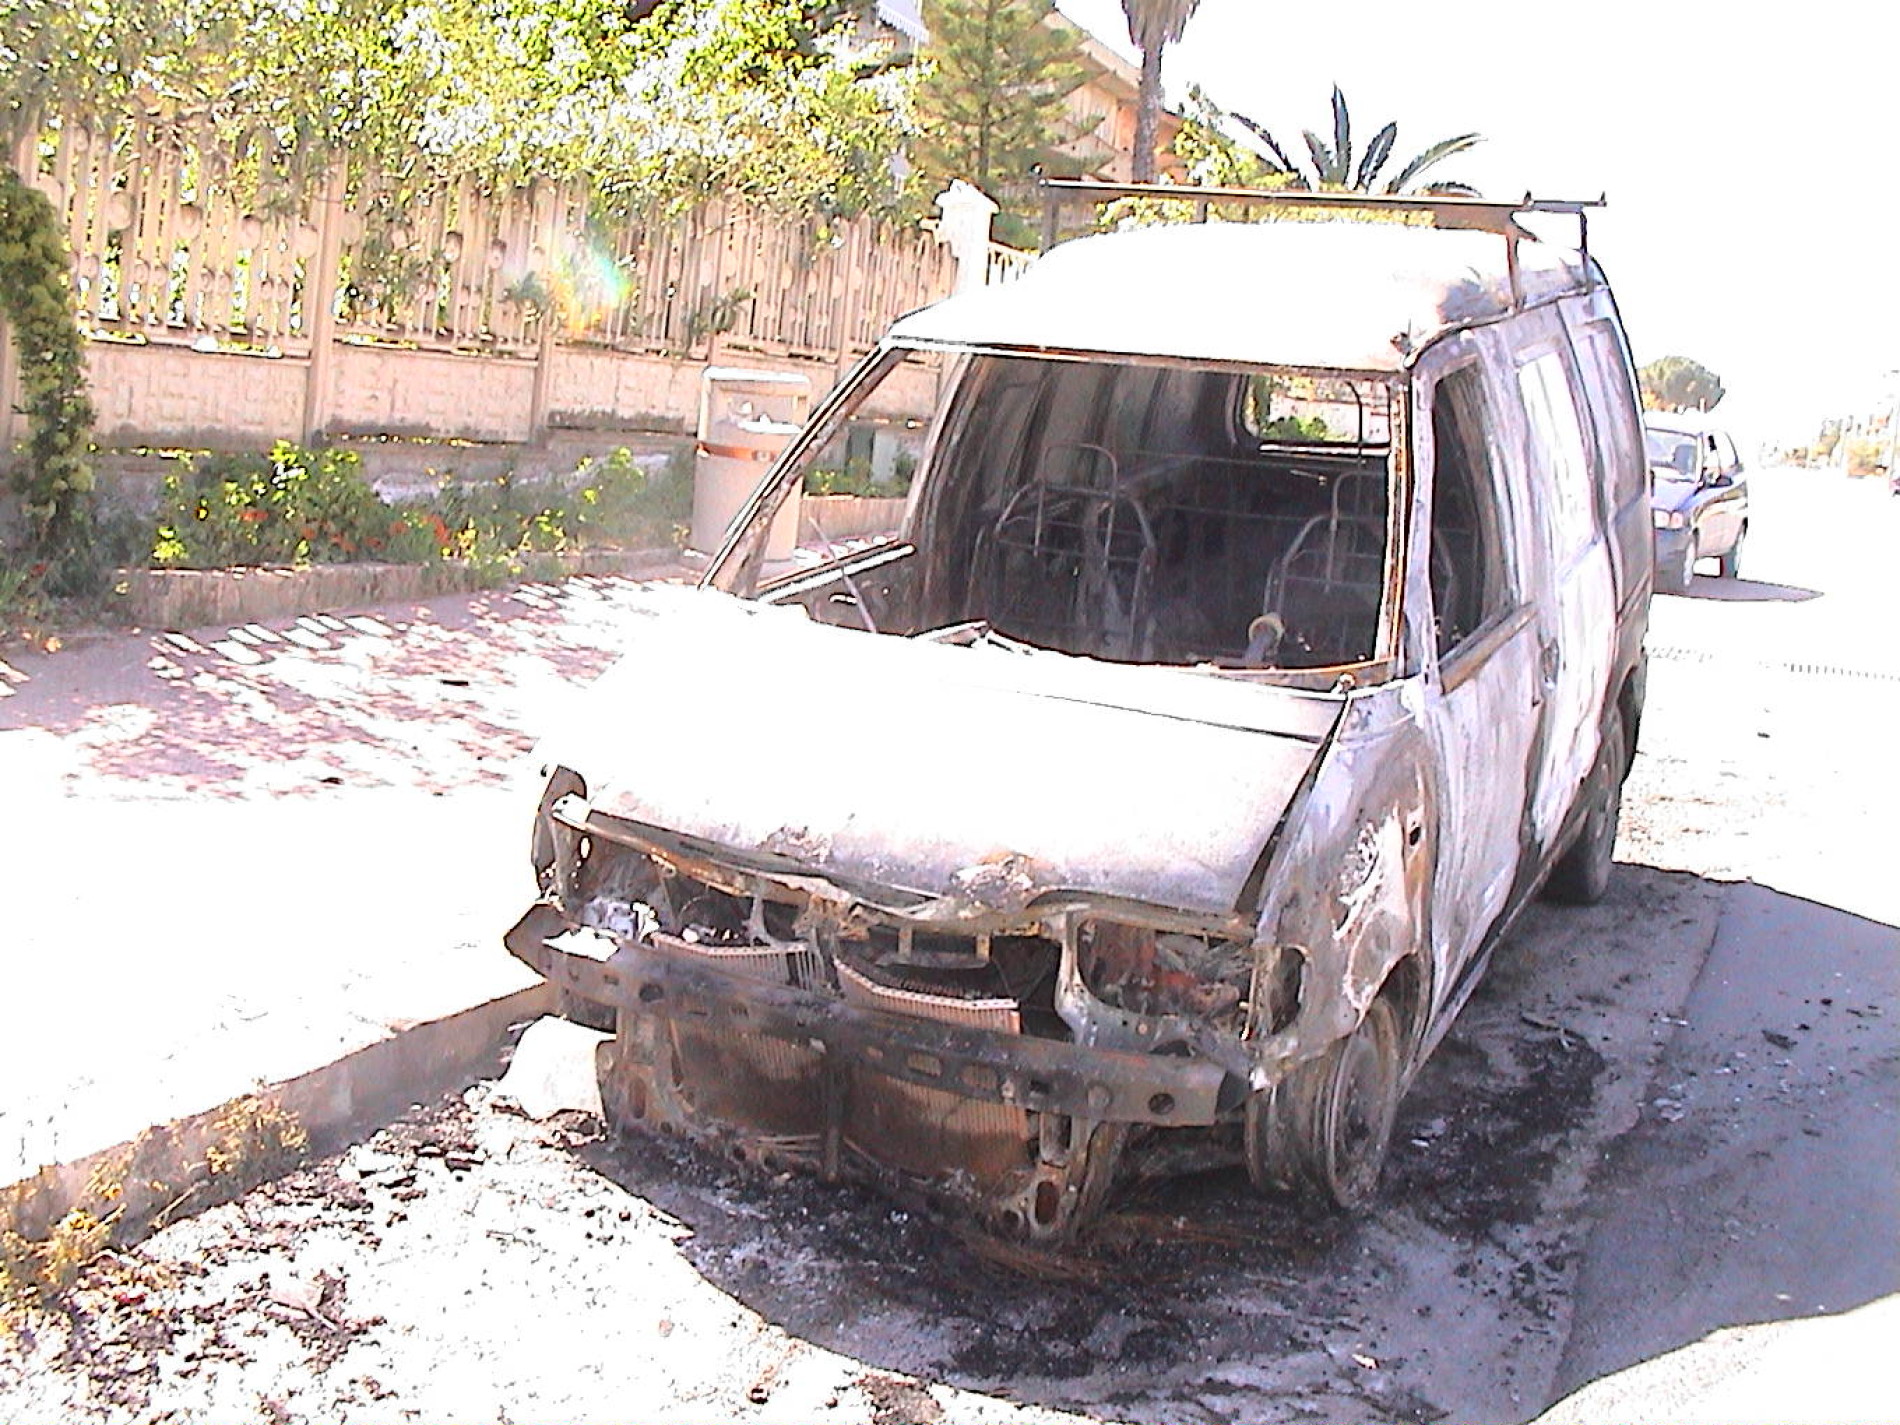 Distrutti dalle fiamme nella notte due veicoli appartenenti a un commerciante di ferramenta